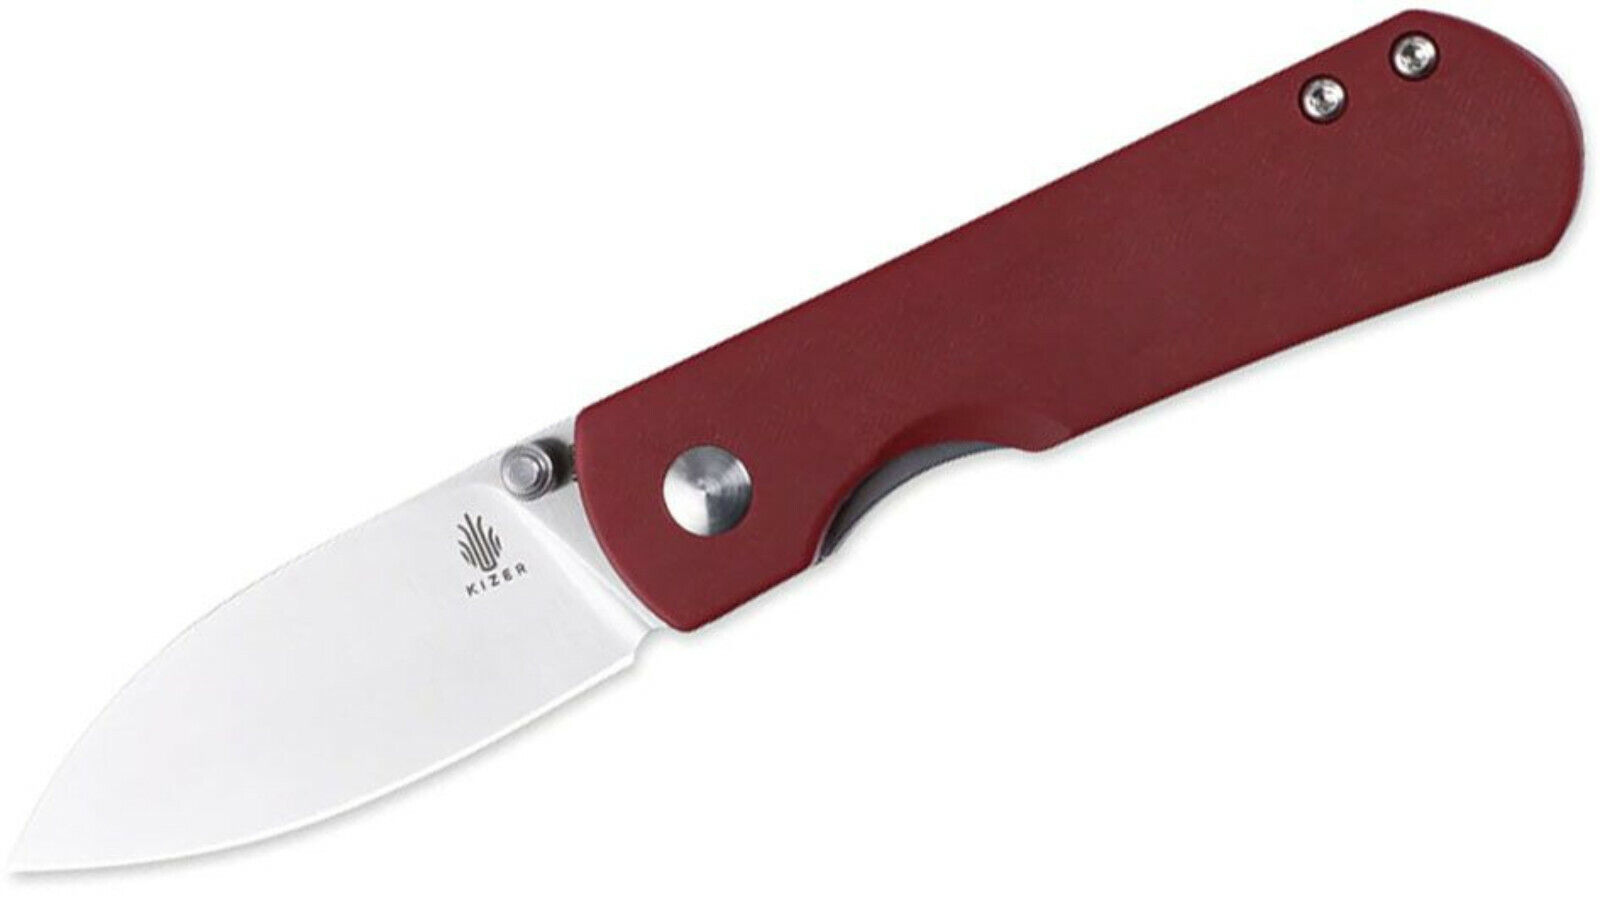 KIZER 3525S1 YORKIE FOLDING KNIFE BOHLER M390 STAINLESS STEEL RED MICARTA HANDLE